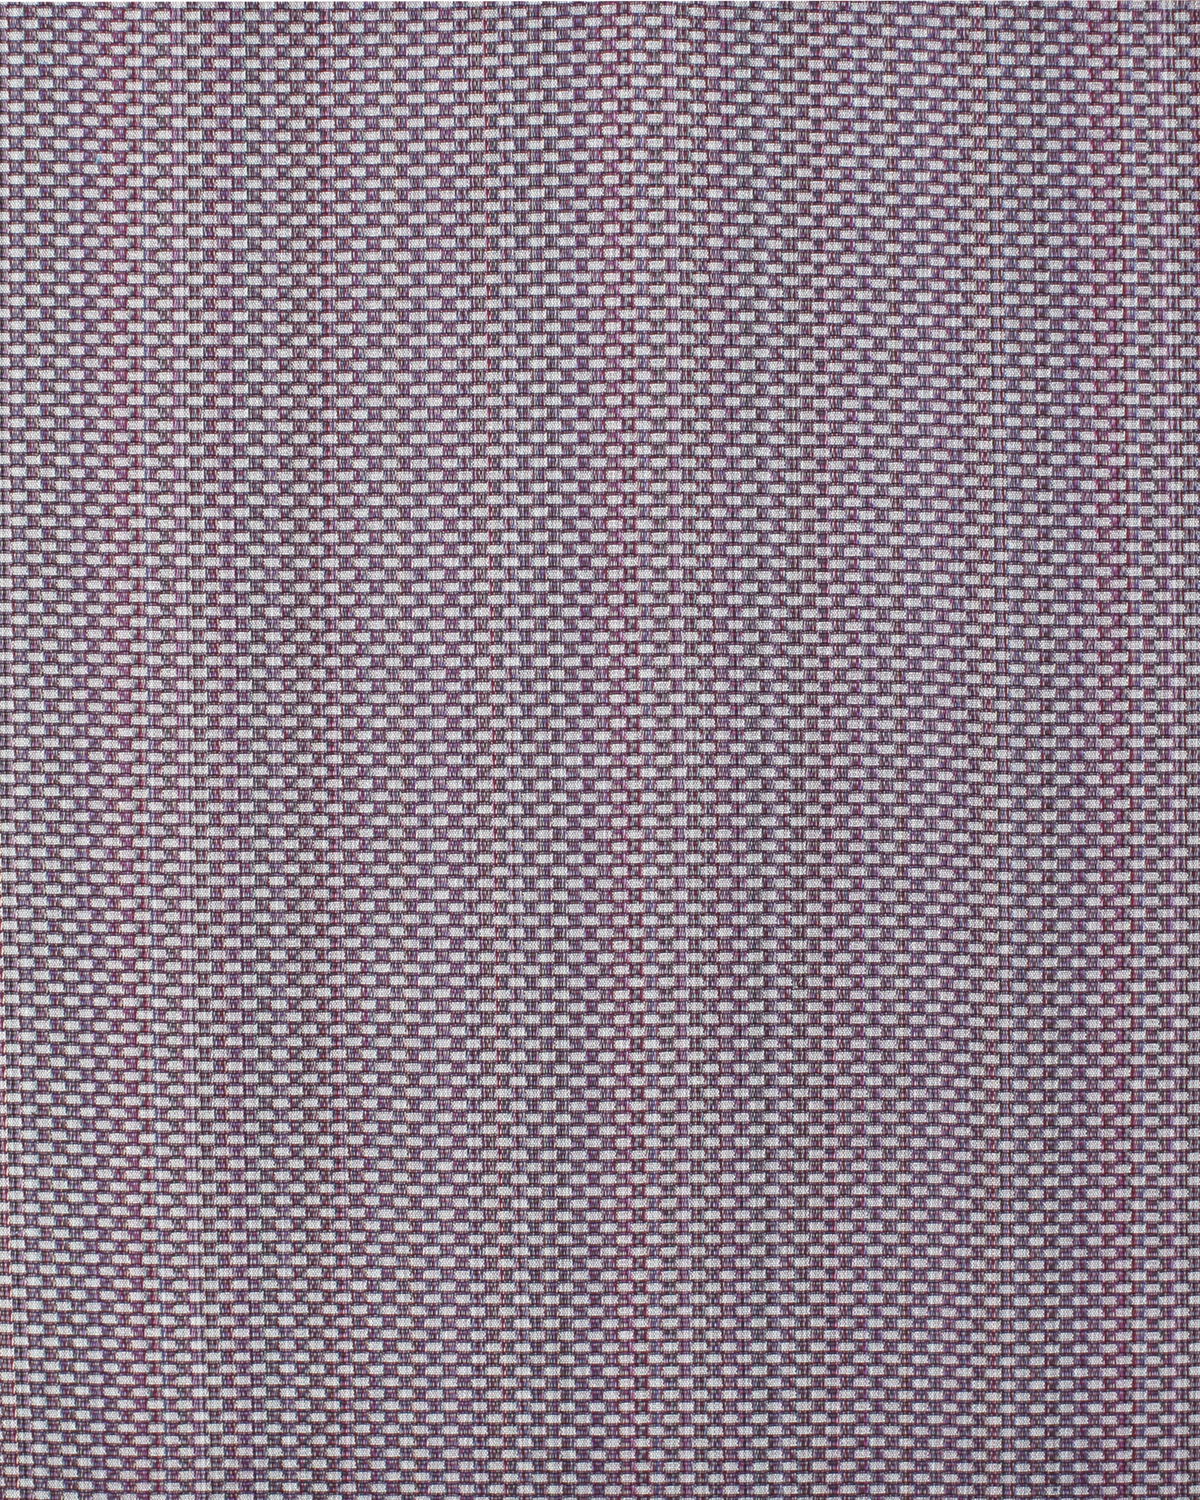 Channels Fabric in Purple